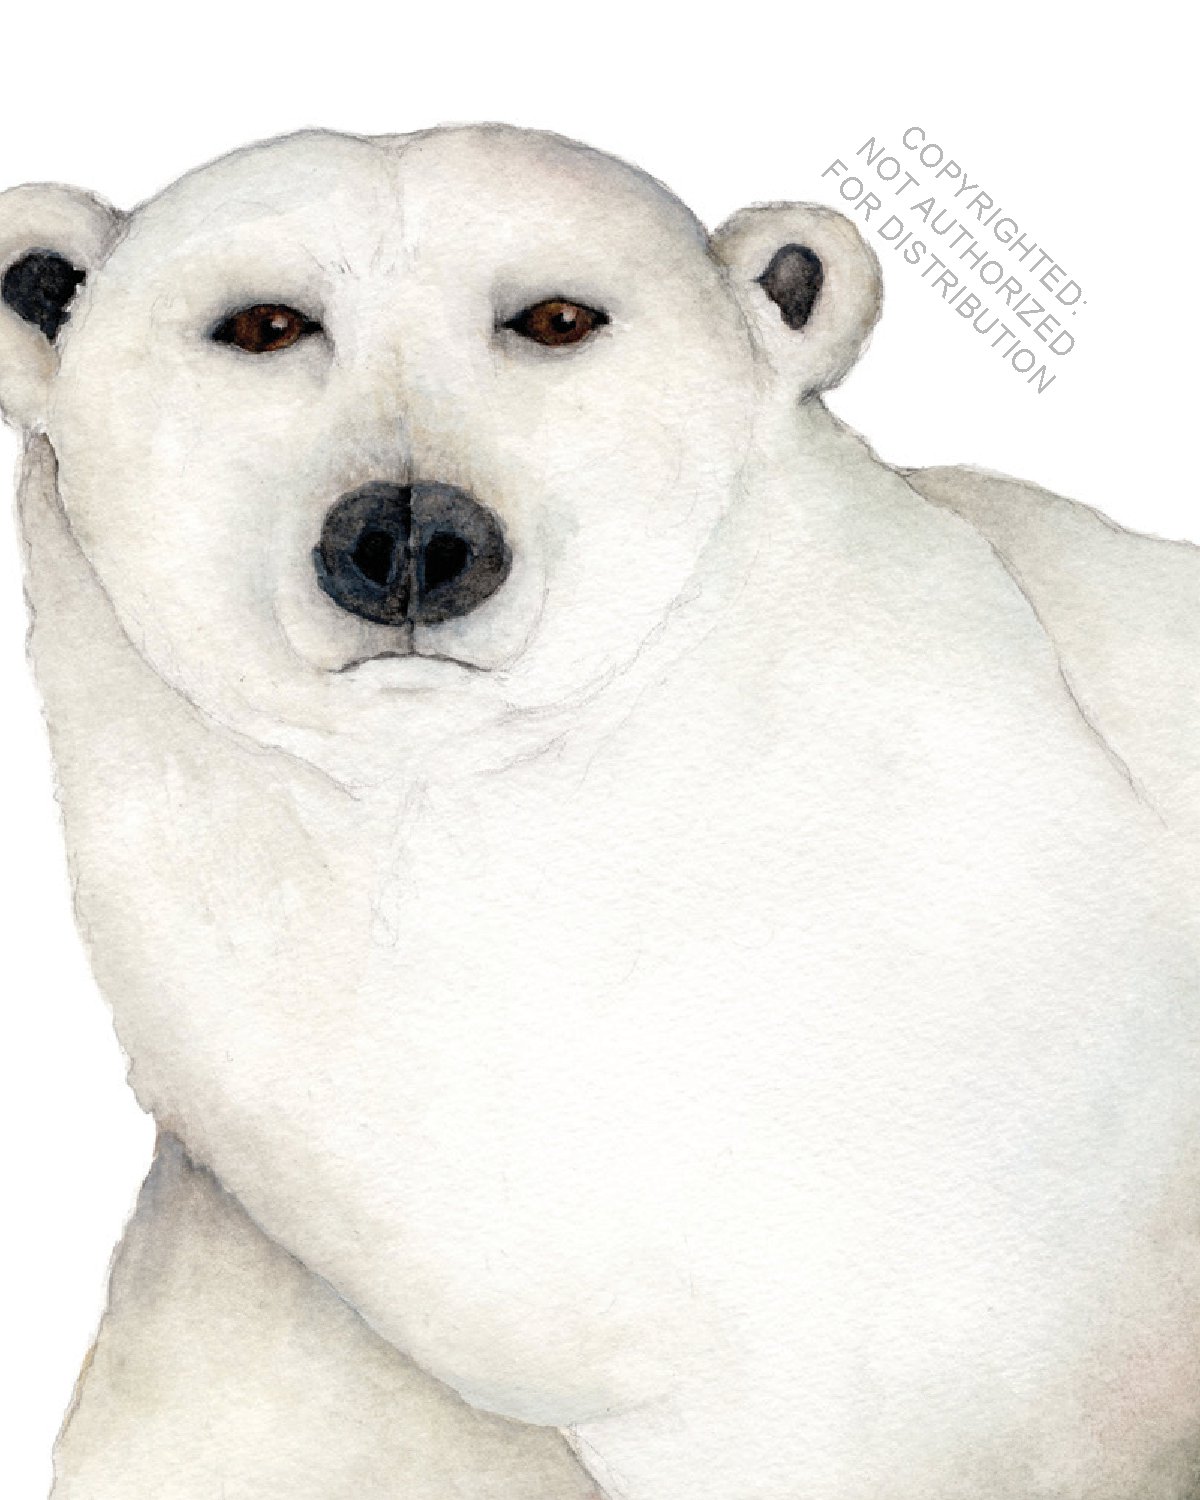 I Am Polar Bear